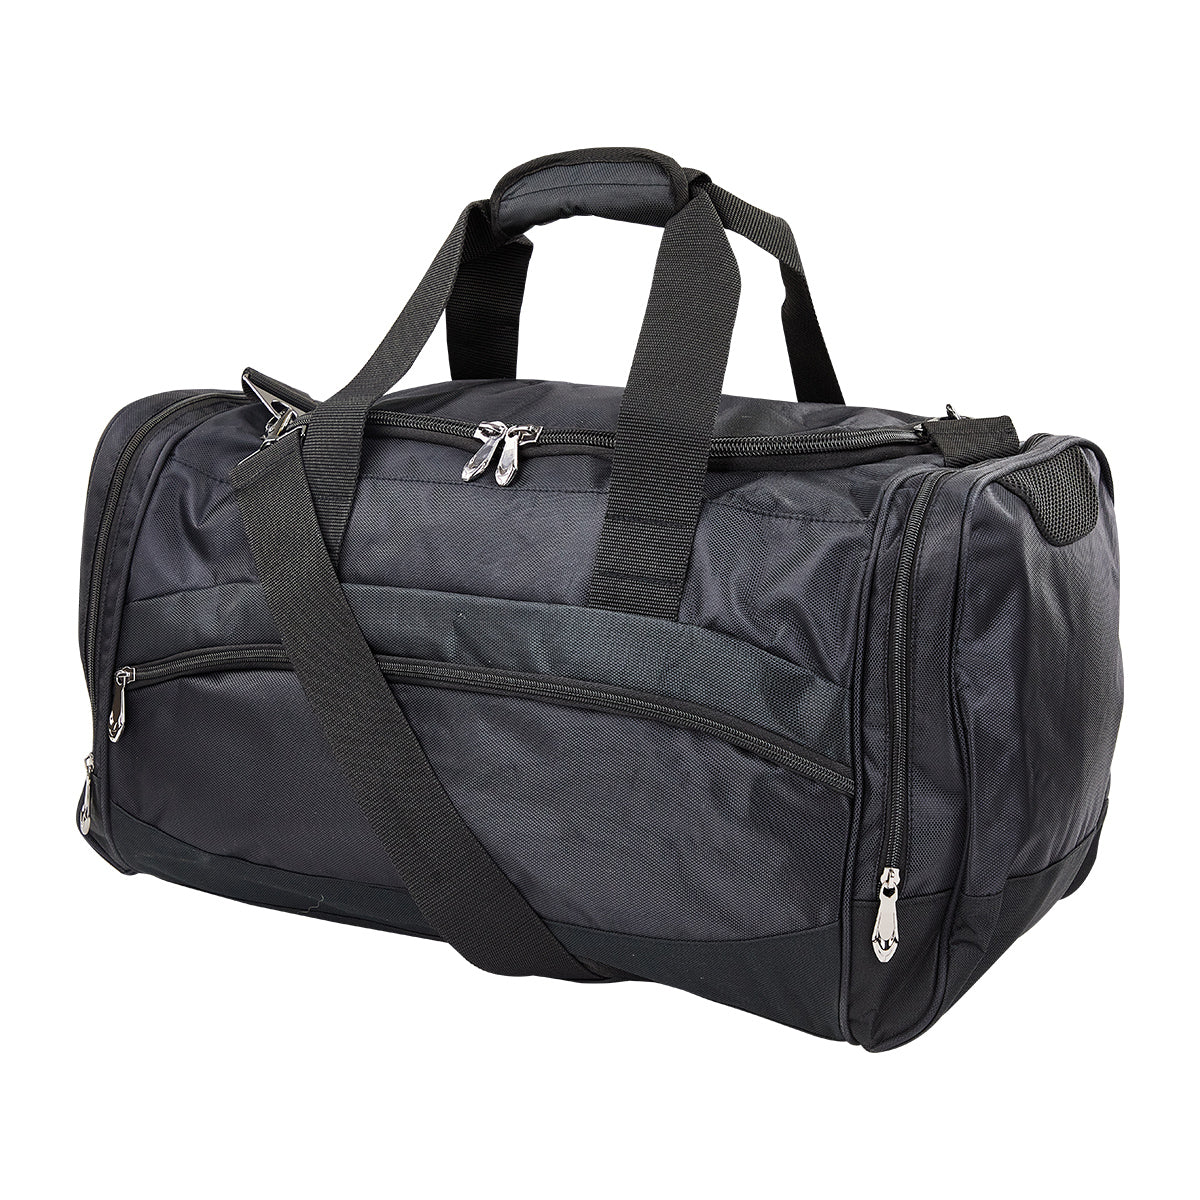 Premium Sport Bag - Extra Large